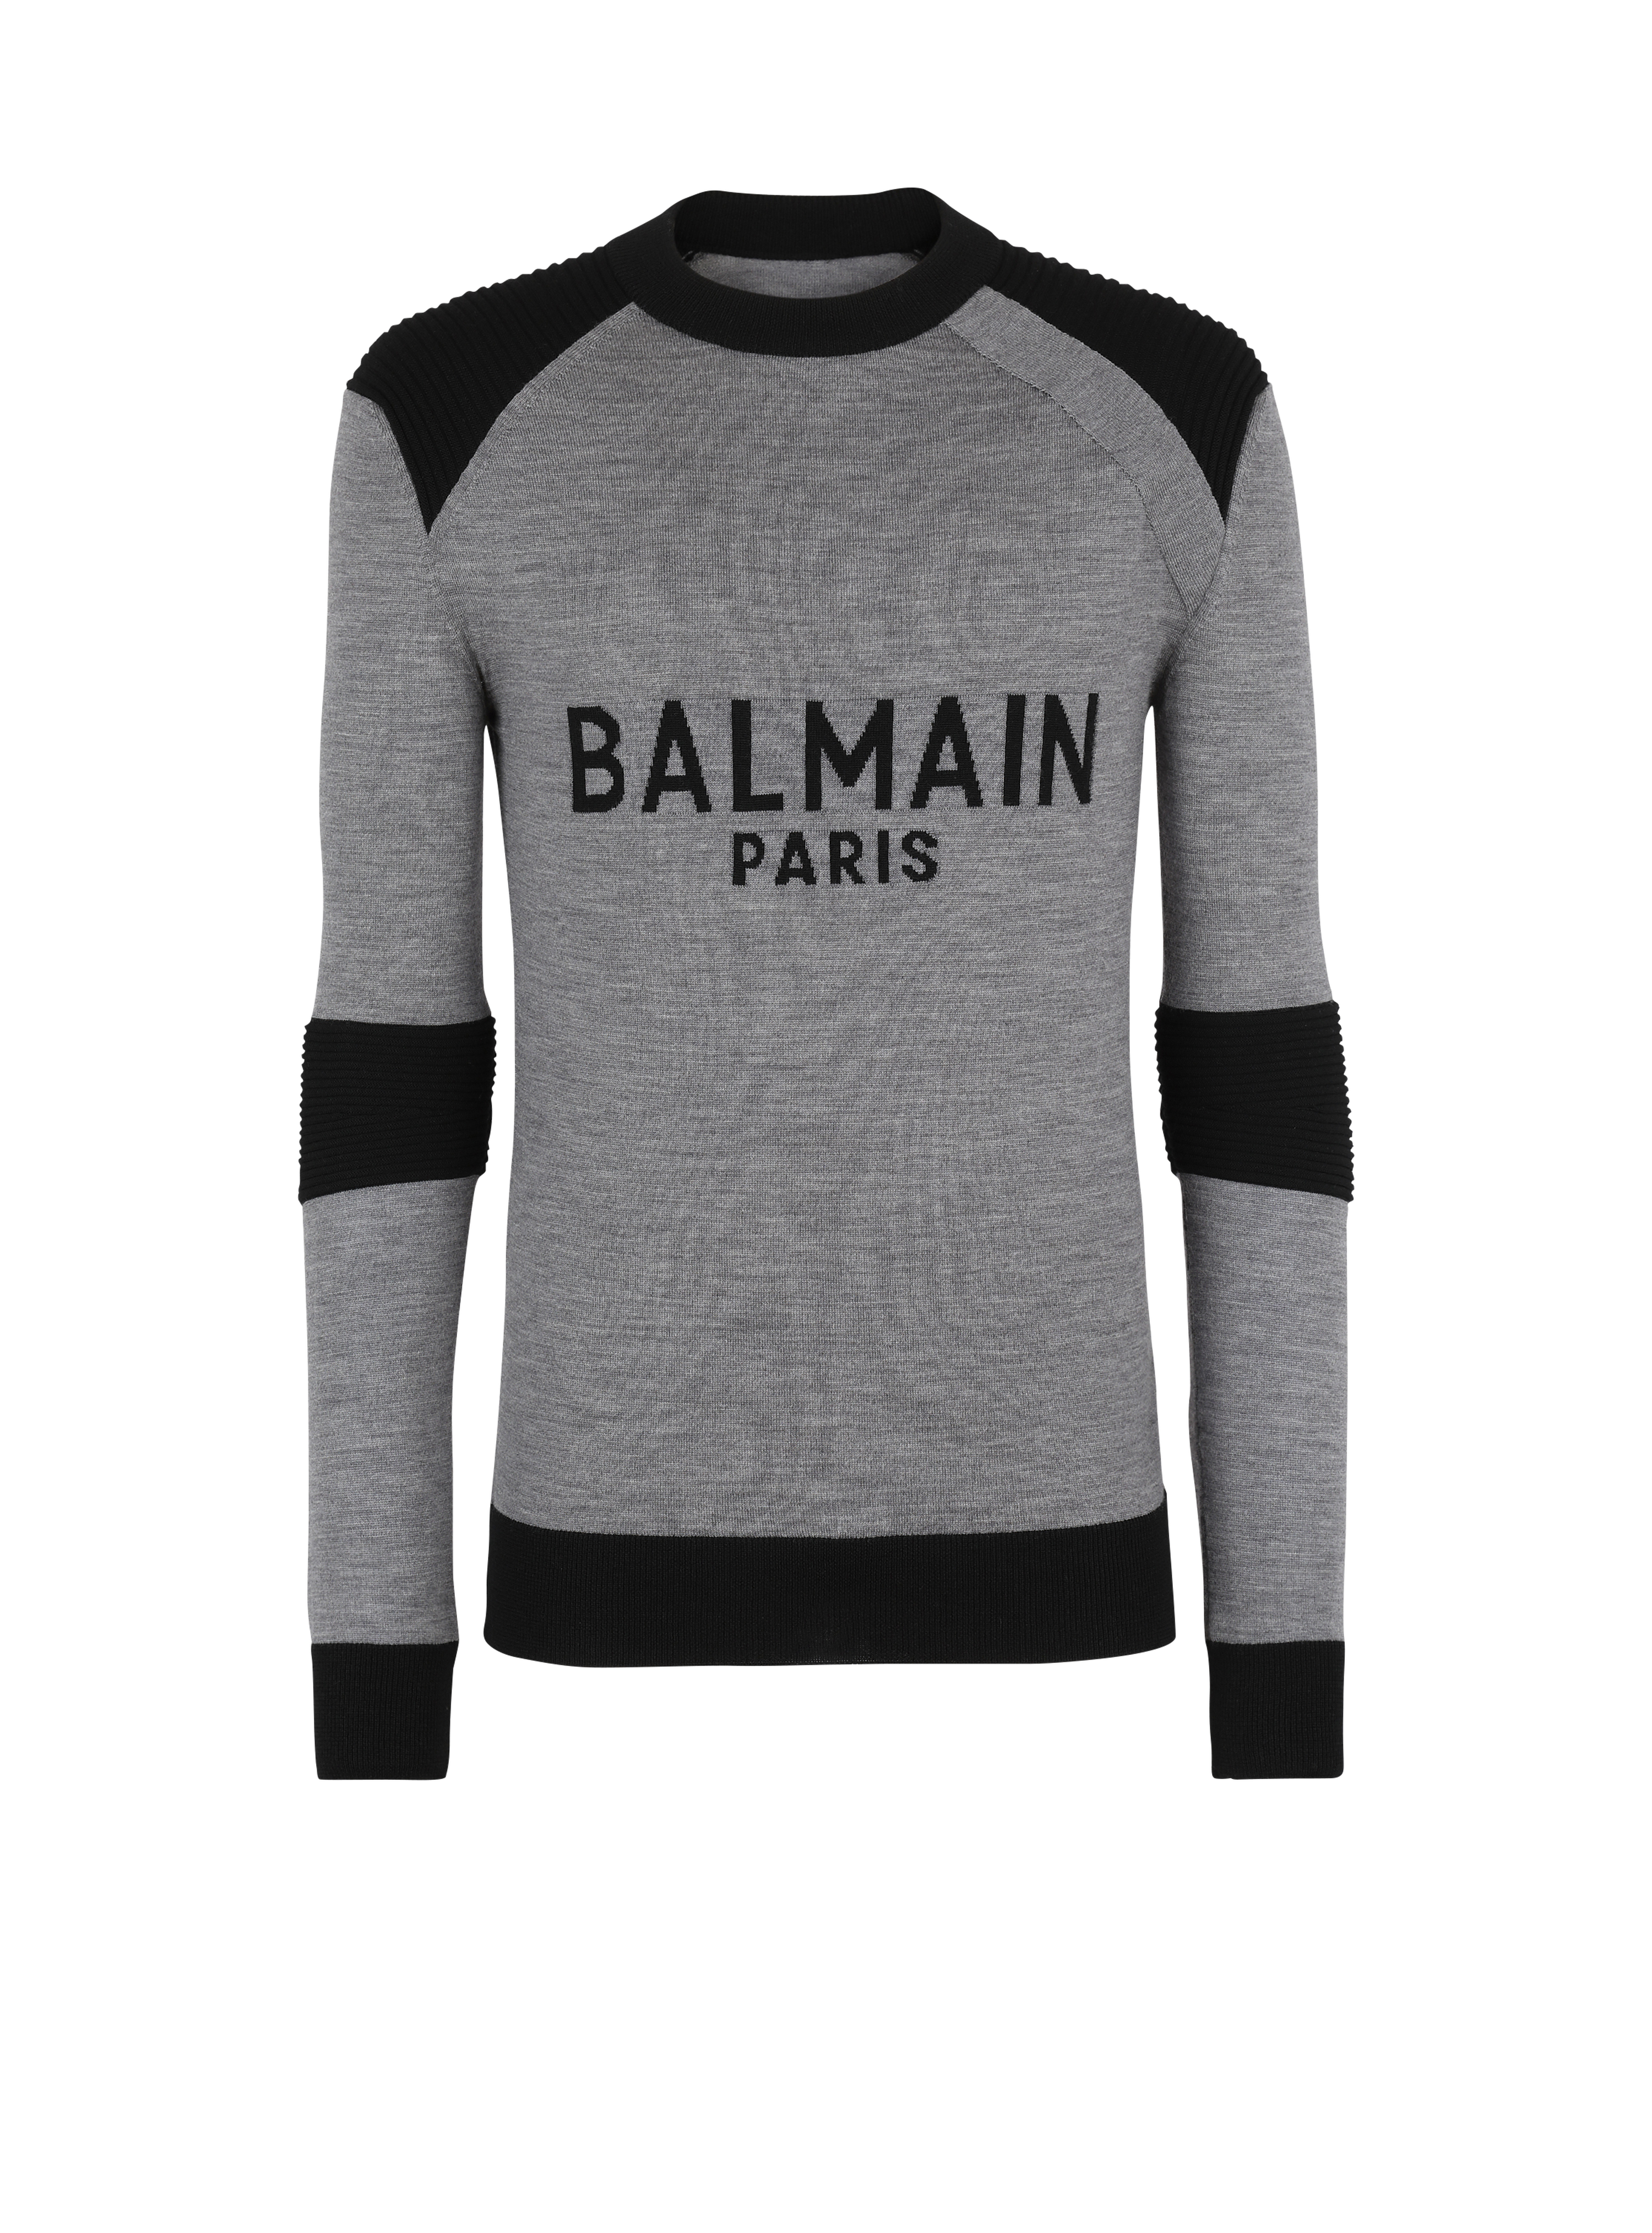 Wollpullover mit Logo von Balmain Paris, grau